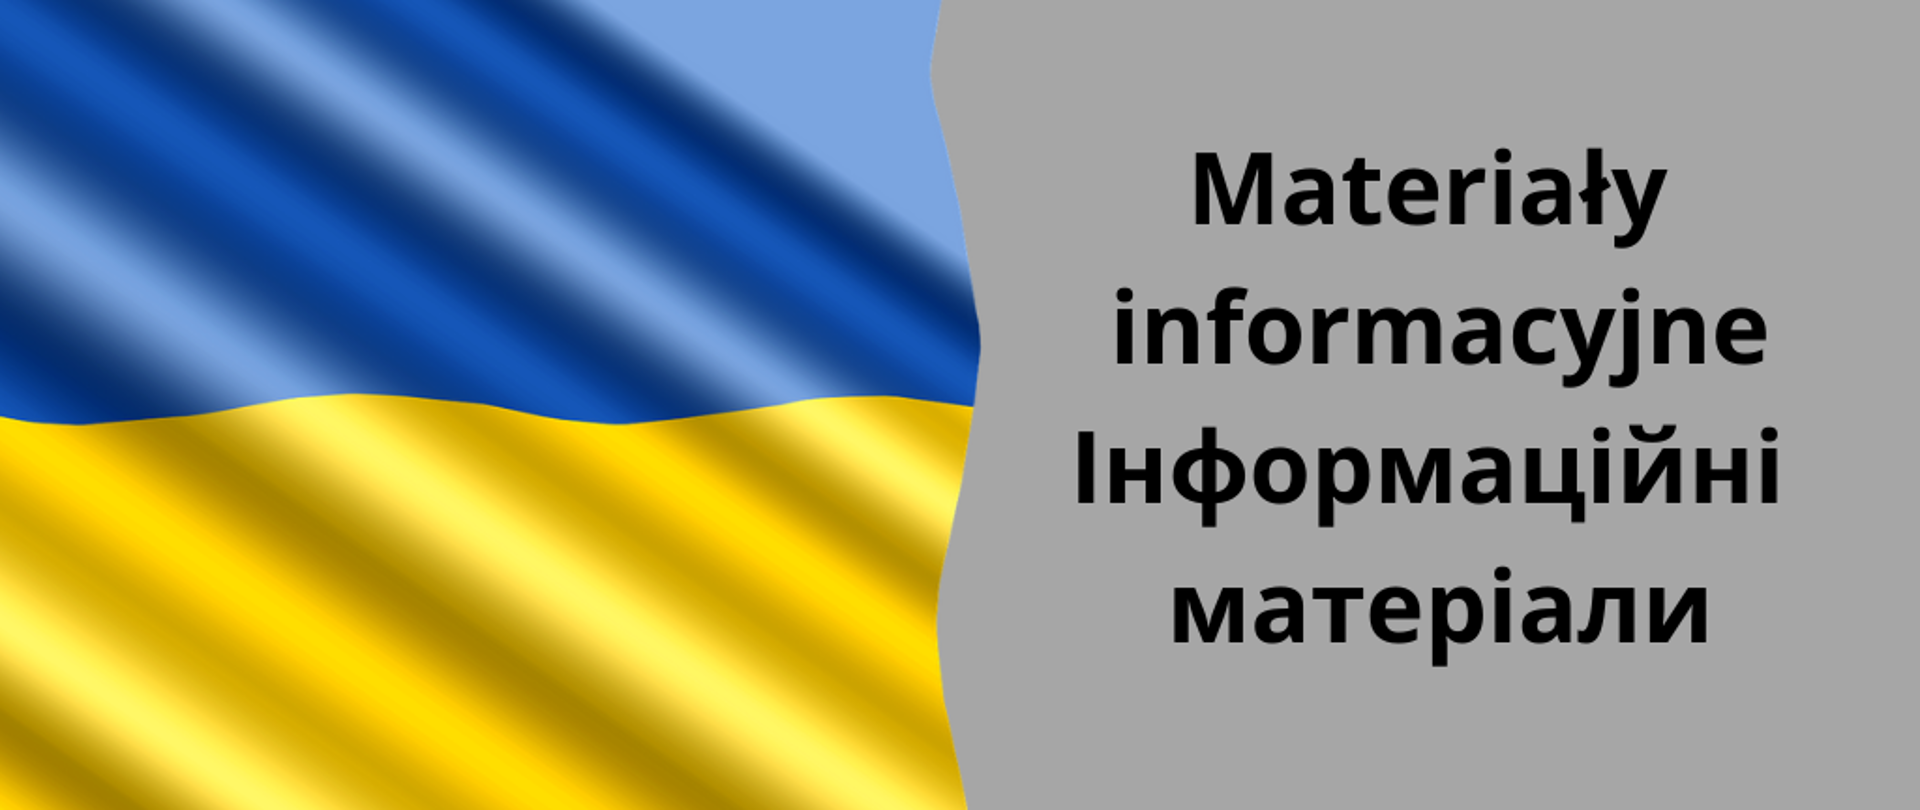 napis materiały informacyjne po polsku i po ukraińsku, flaga Ukrainy